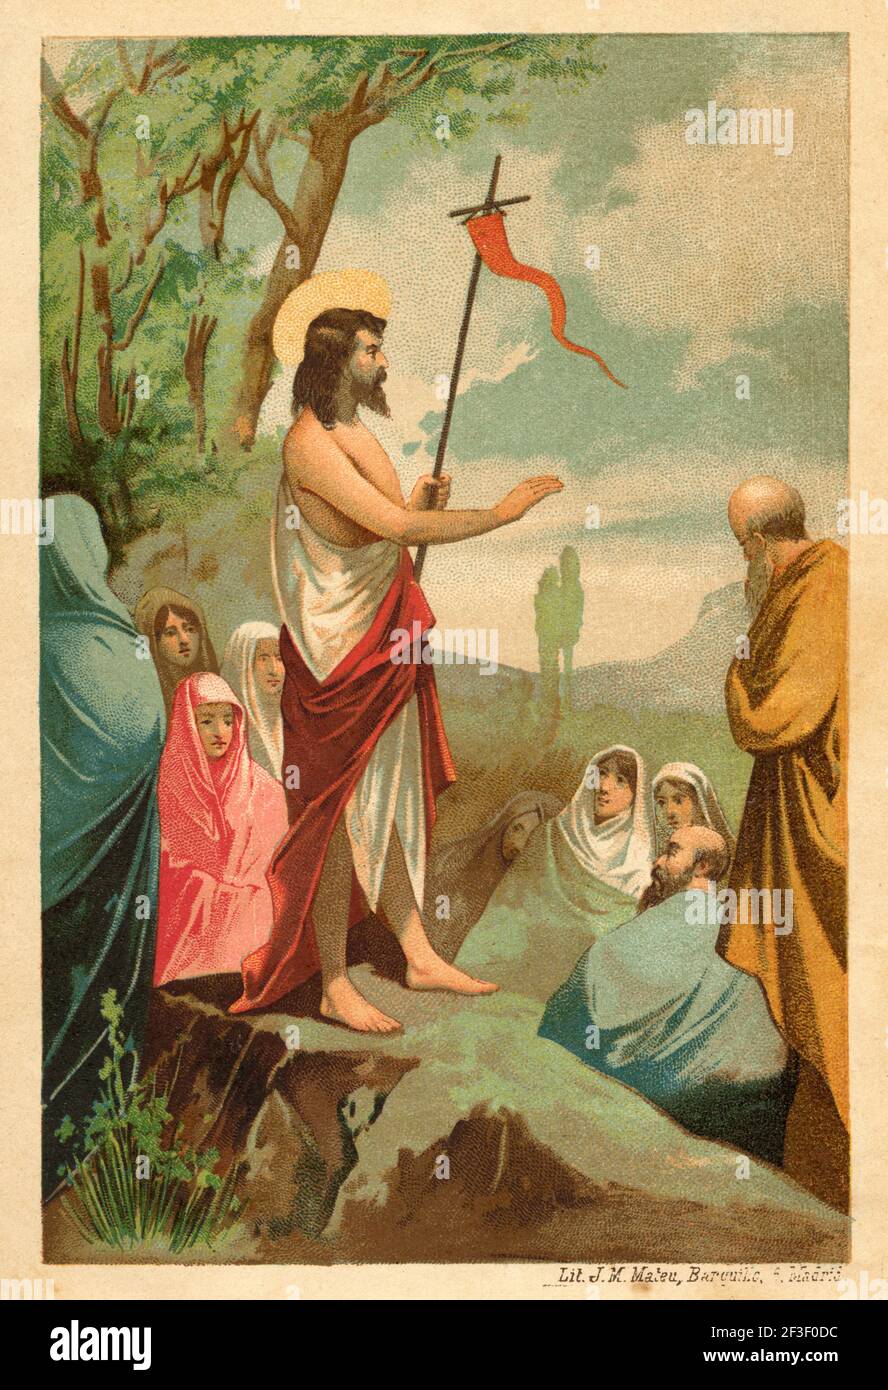 Saint Jean le Baptiste prêchant à une foule. Ancienne lithographie de couleur du XIXe siècle illustration de Jésus Christ par Veuillot 1890 Banque D'Images